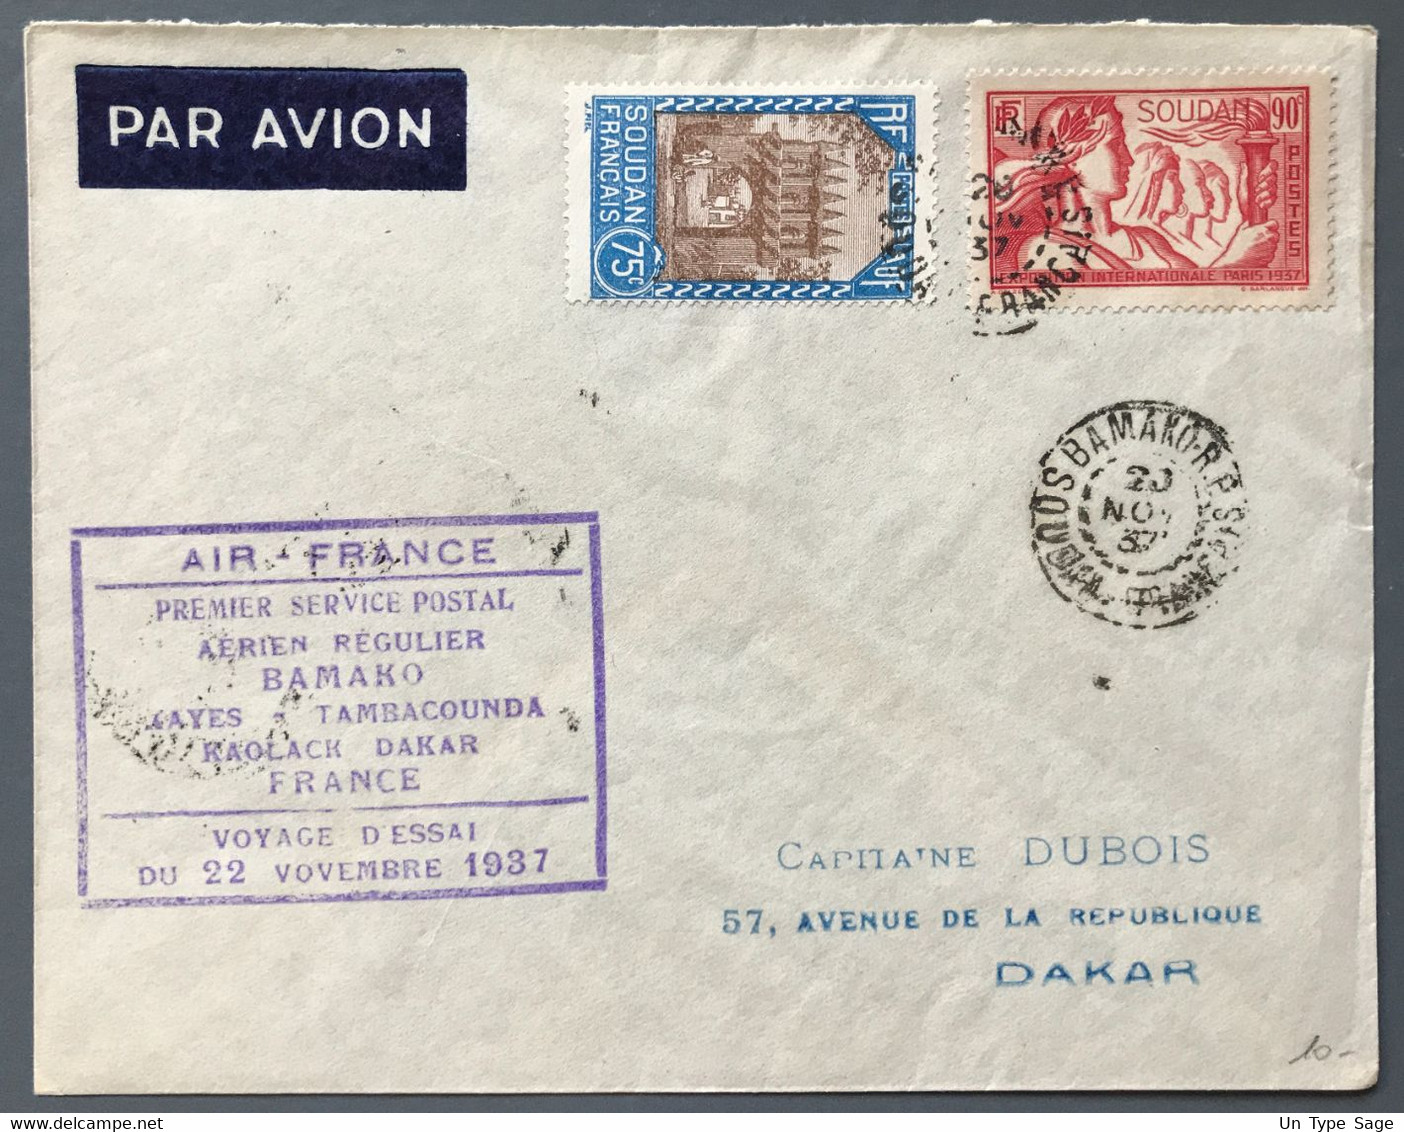 Soudan - Premier Service Postal Regulier Bamako-France - VOYAGE D'ESSAI 22.11.1937 - (A1360) - Lettres & Documents